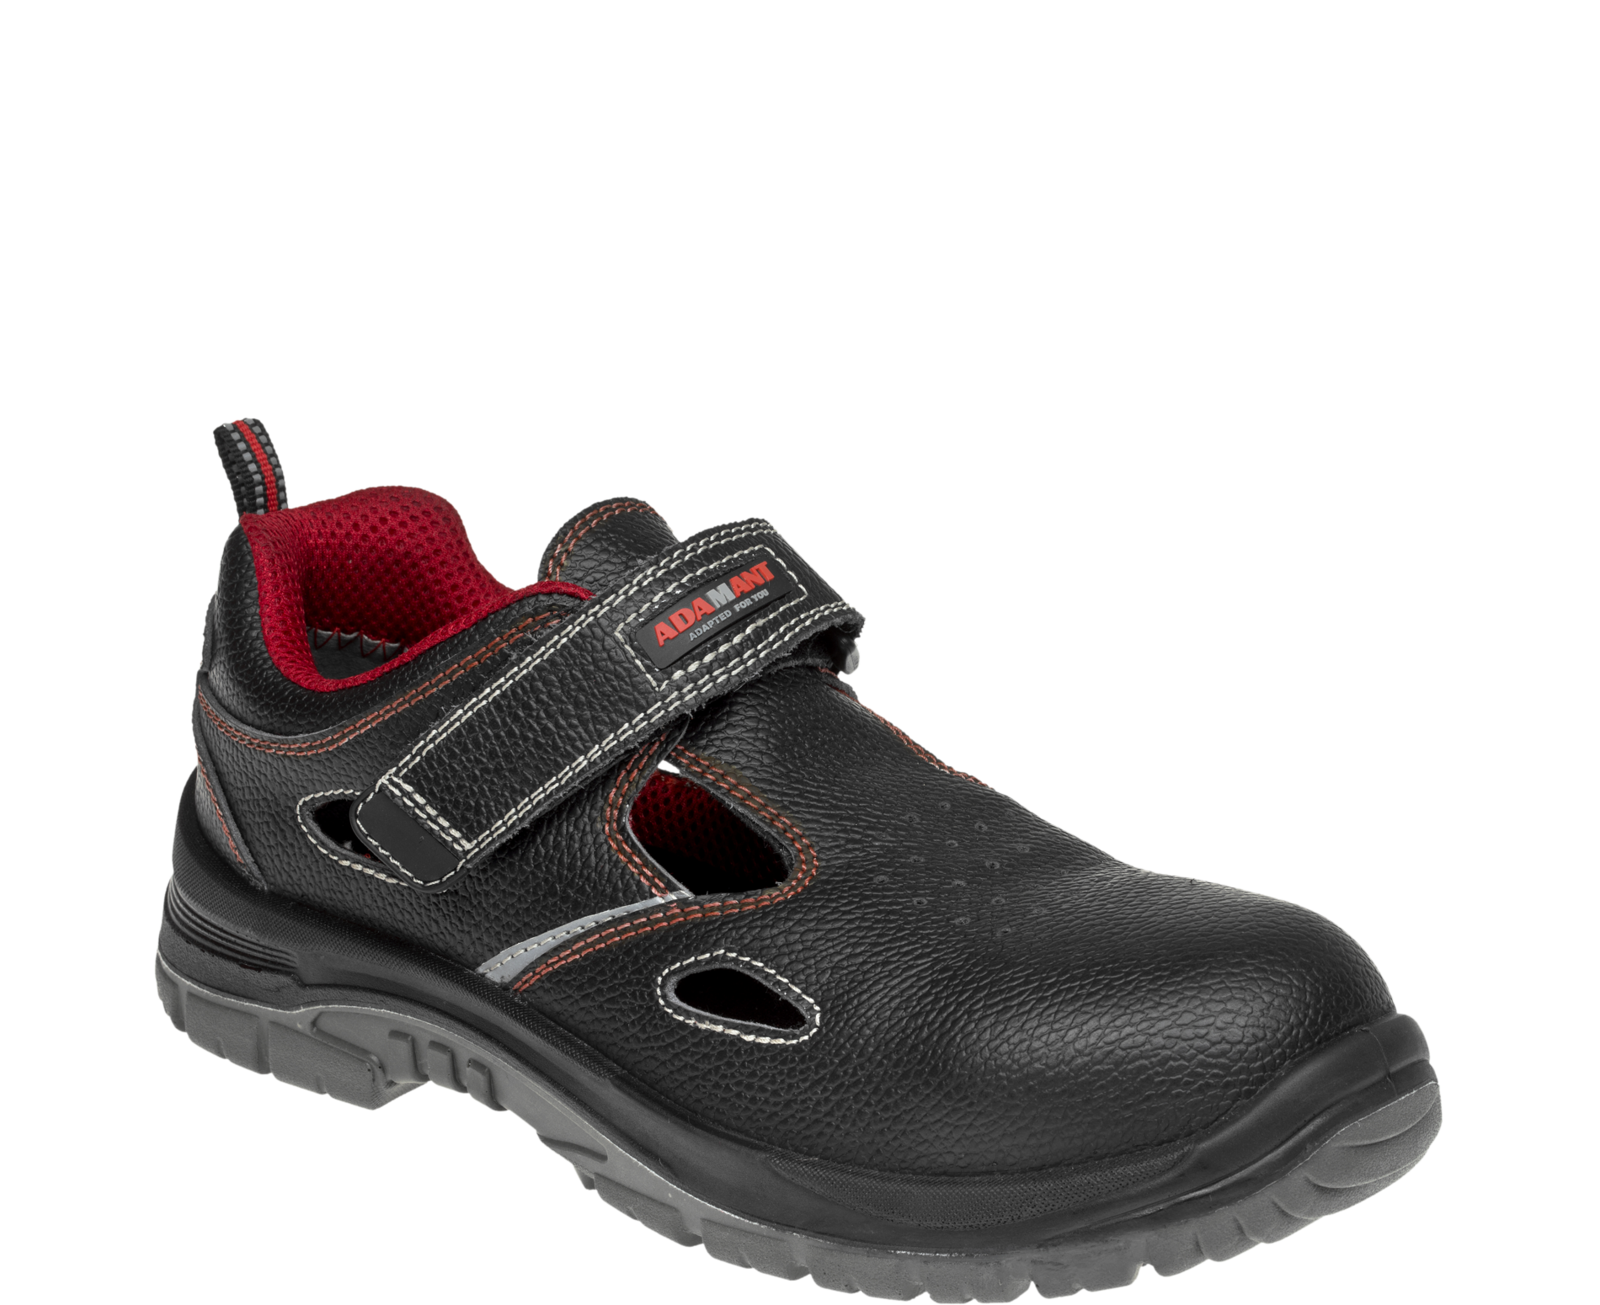 Bezpečnostné sandále Adamant Non Metallic S1 SRC - veľkosť: 49, farba: čierna/červená